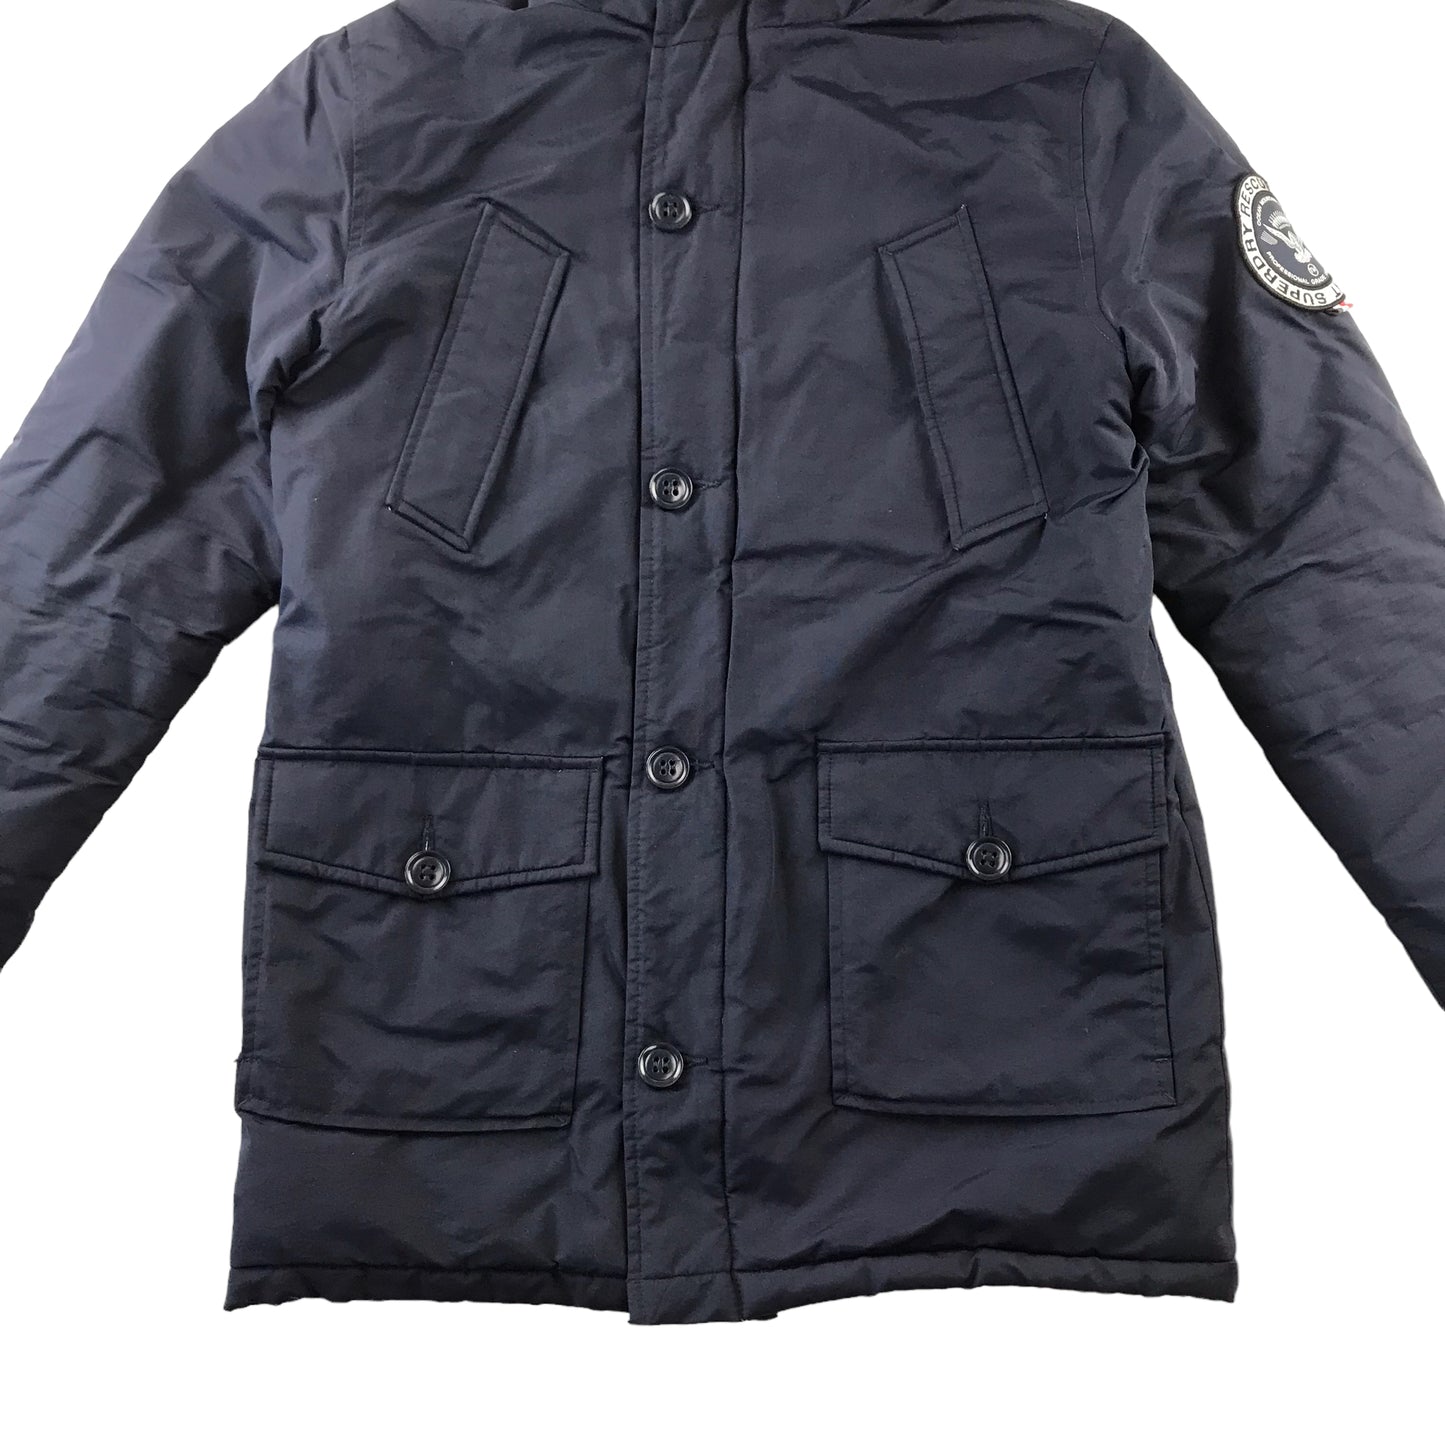 Superdry Jacket Size Men M Navy Blue Parka warm lined